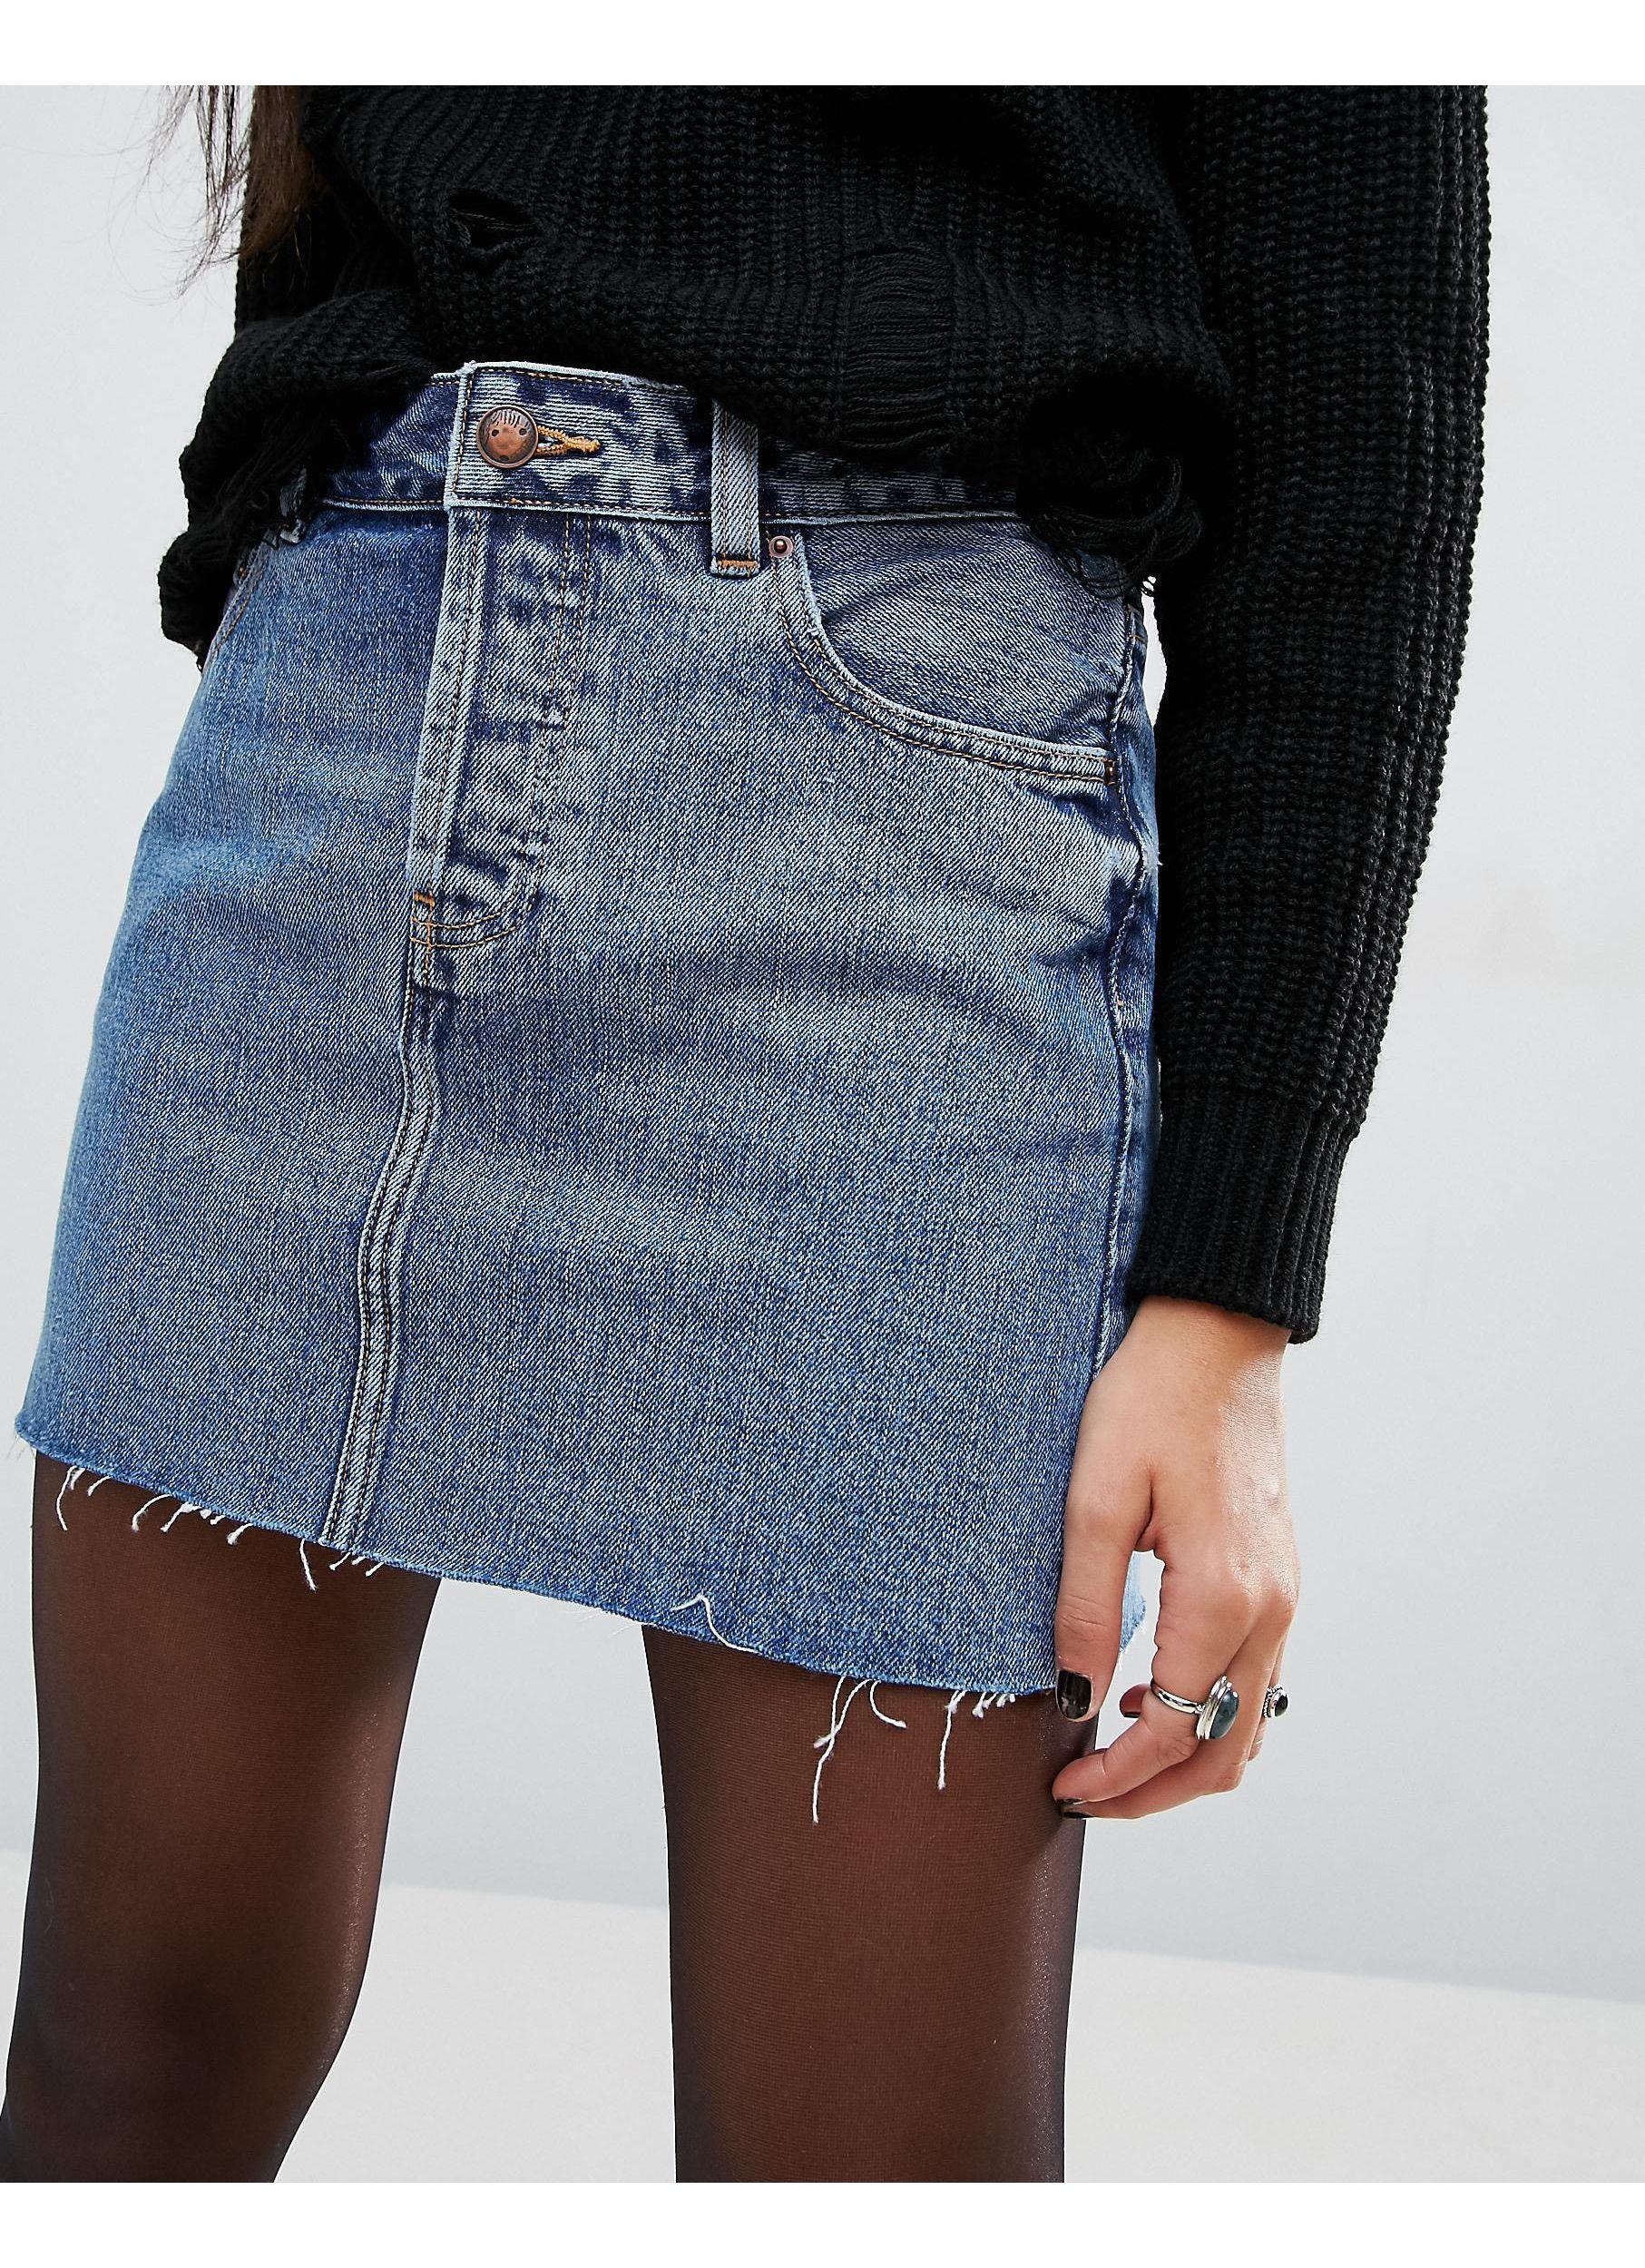 Джинсовые юбки осень. Юбка джинсовая. Джинсовая мини юбка. Короткая джинсовая юбка. Модные джинсовые юбки.